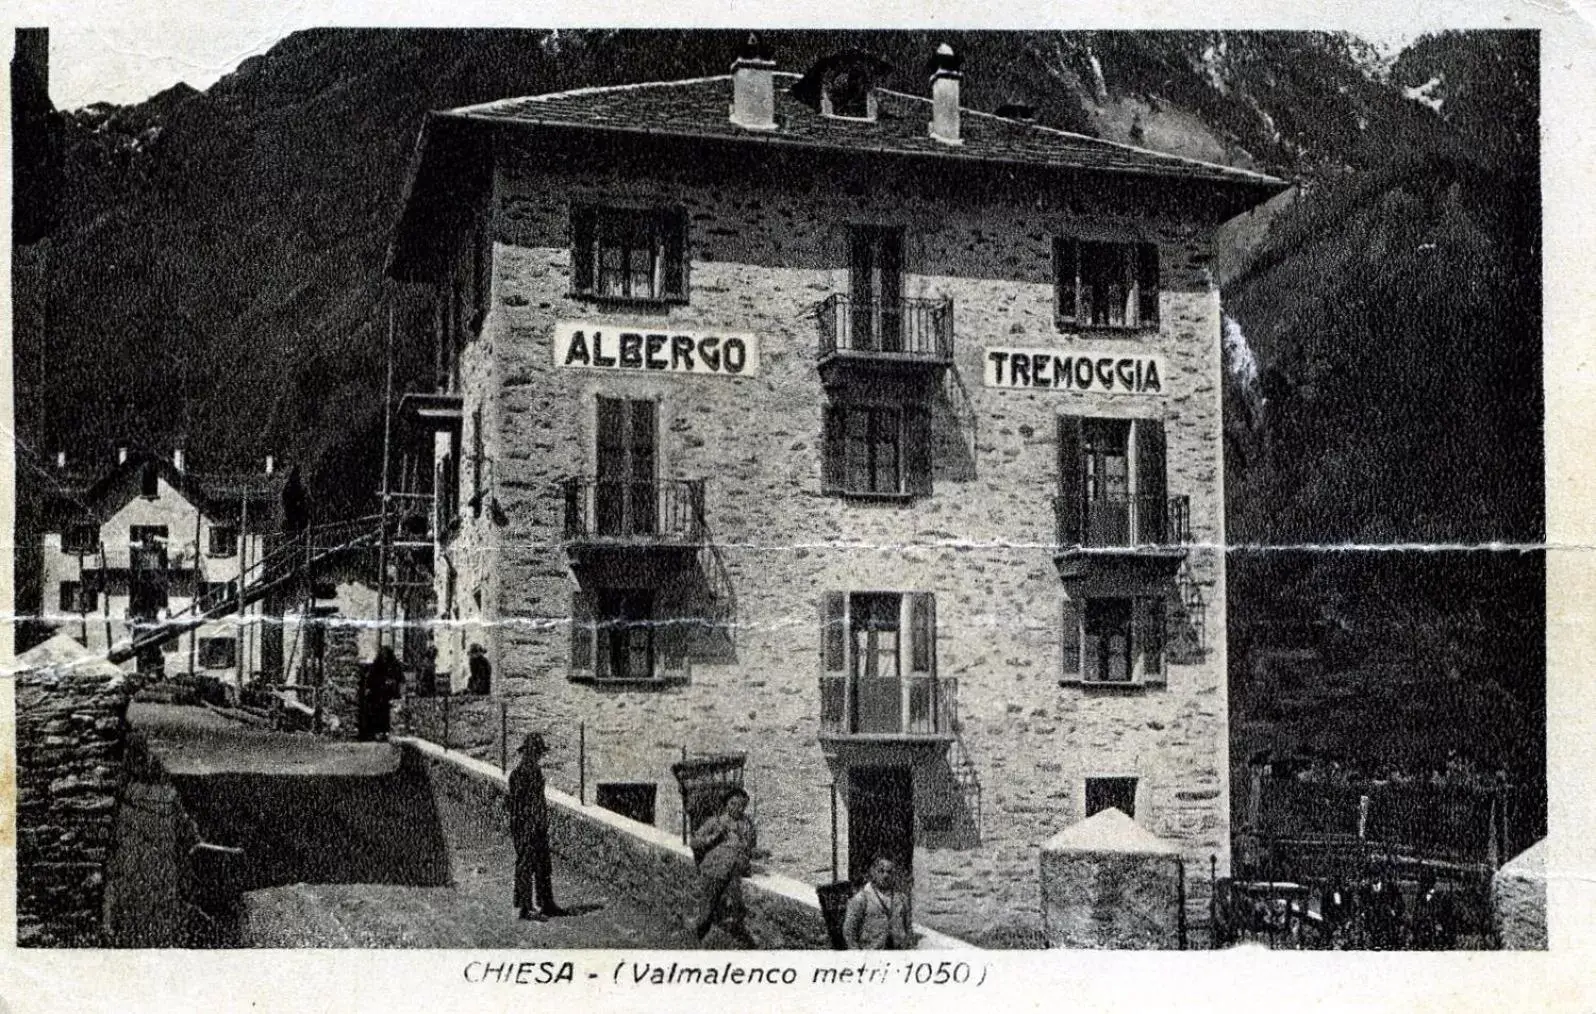 Facade/entrance, Property Building in Hotel Tremoggia